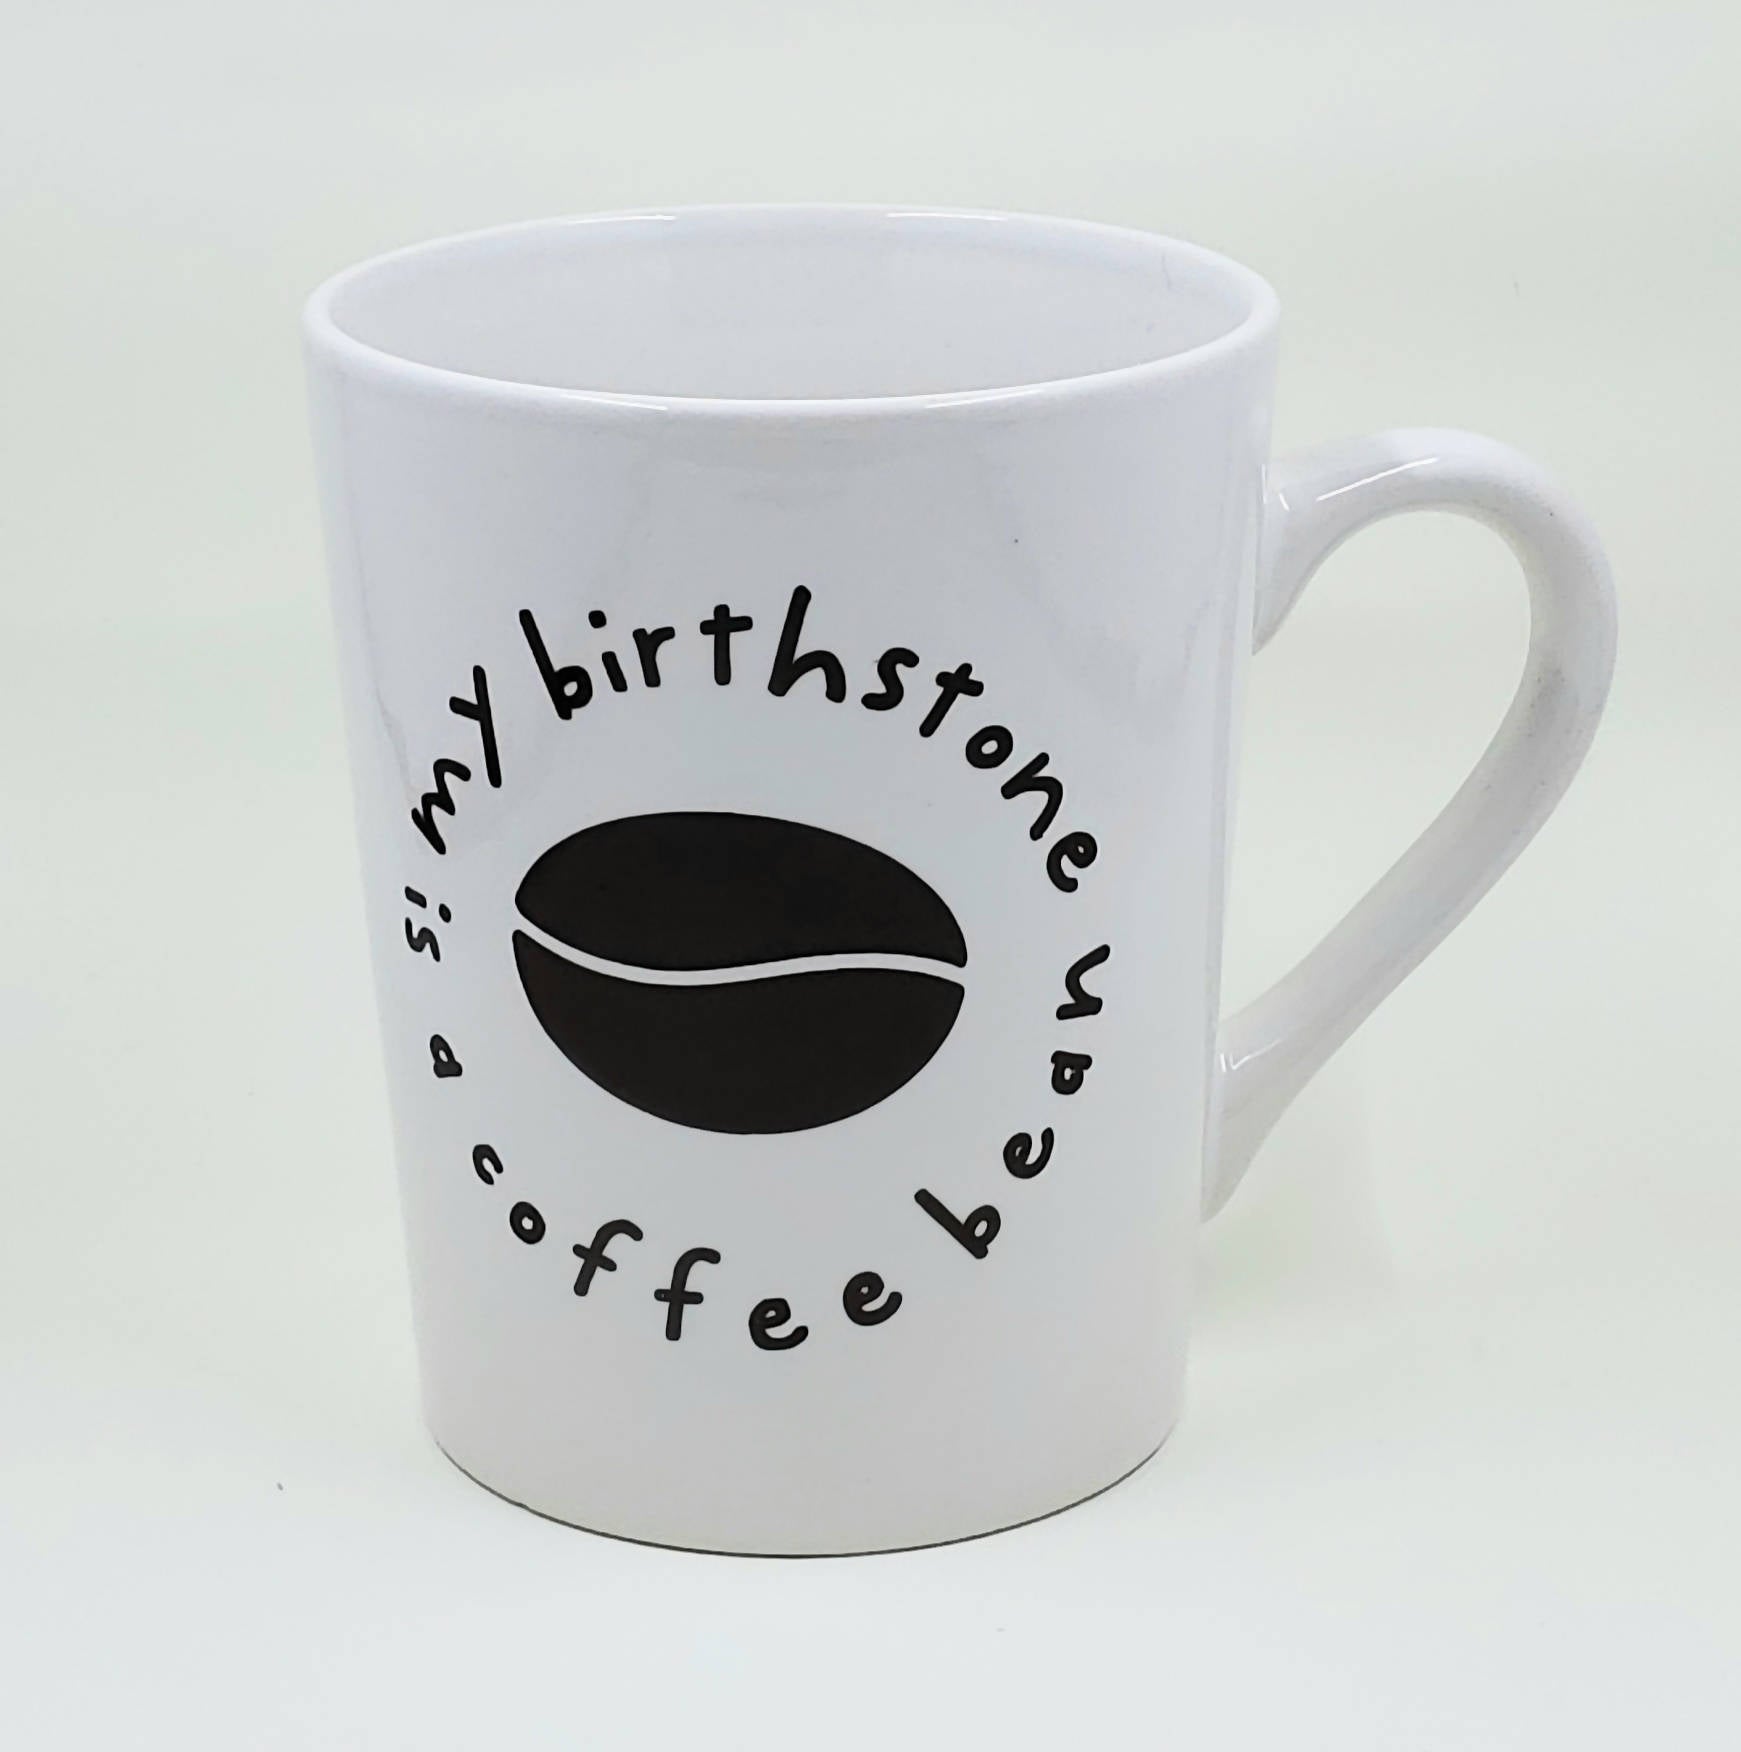 My Birthstone Is a Coffee Bean Coffee Mug